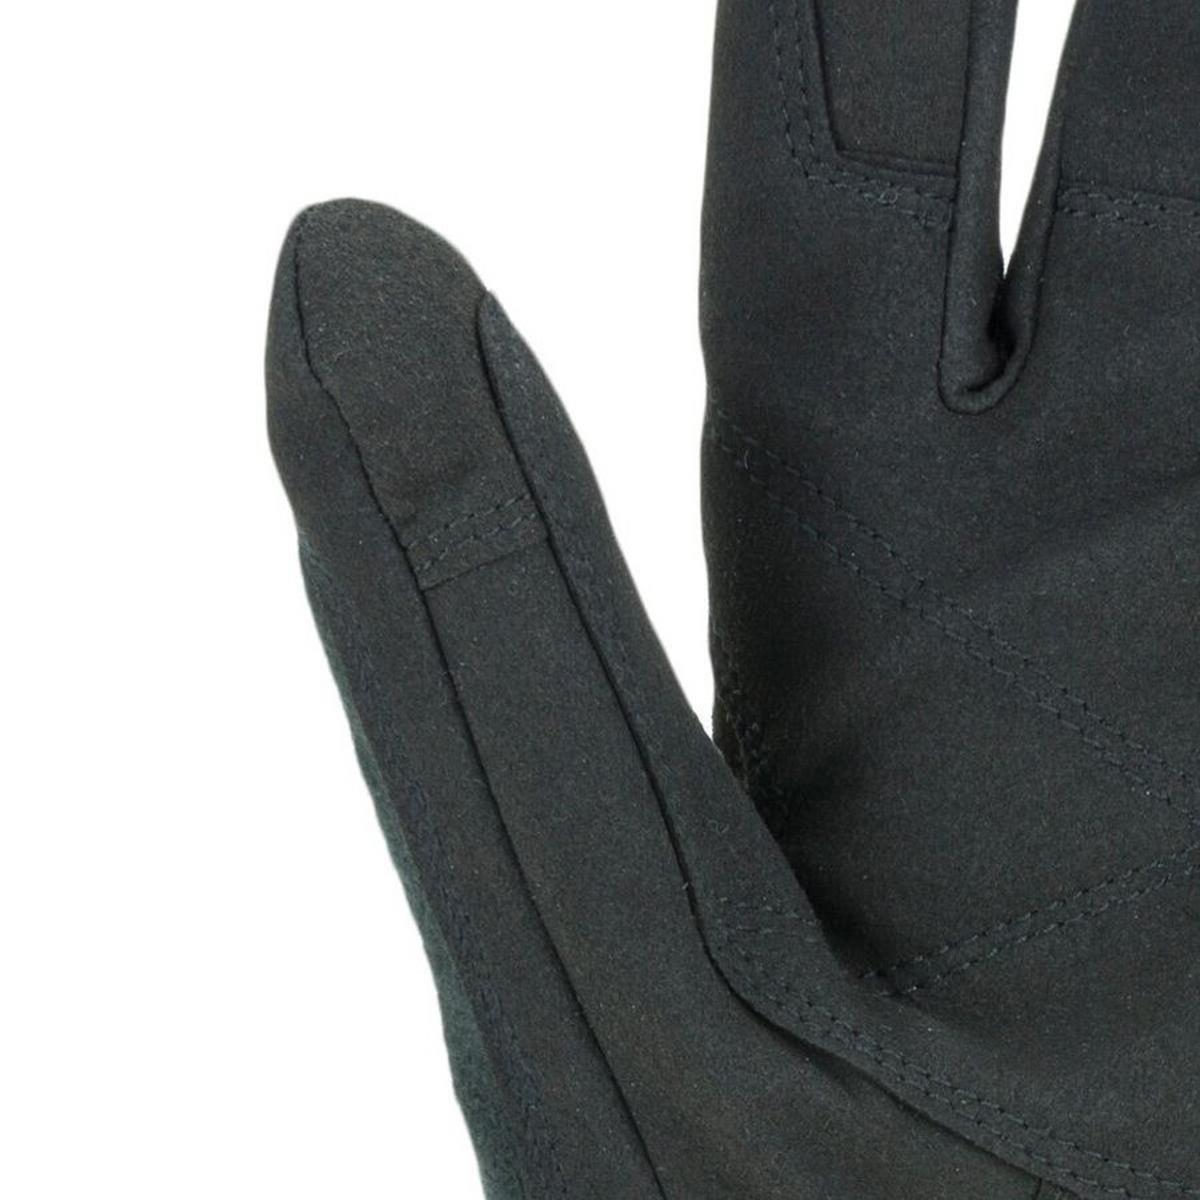 Sealskinz Unisex Harling Glove - Grey